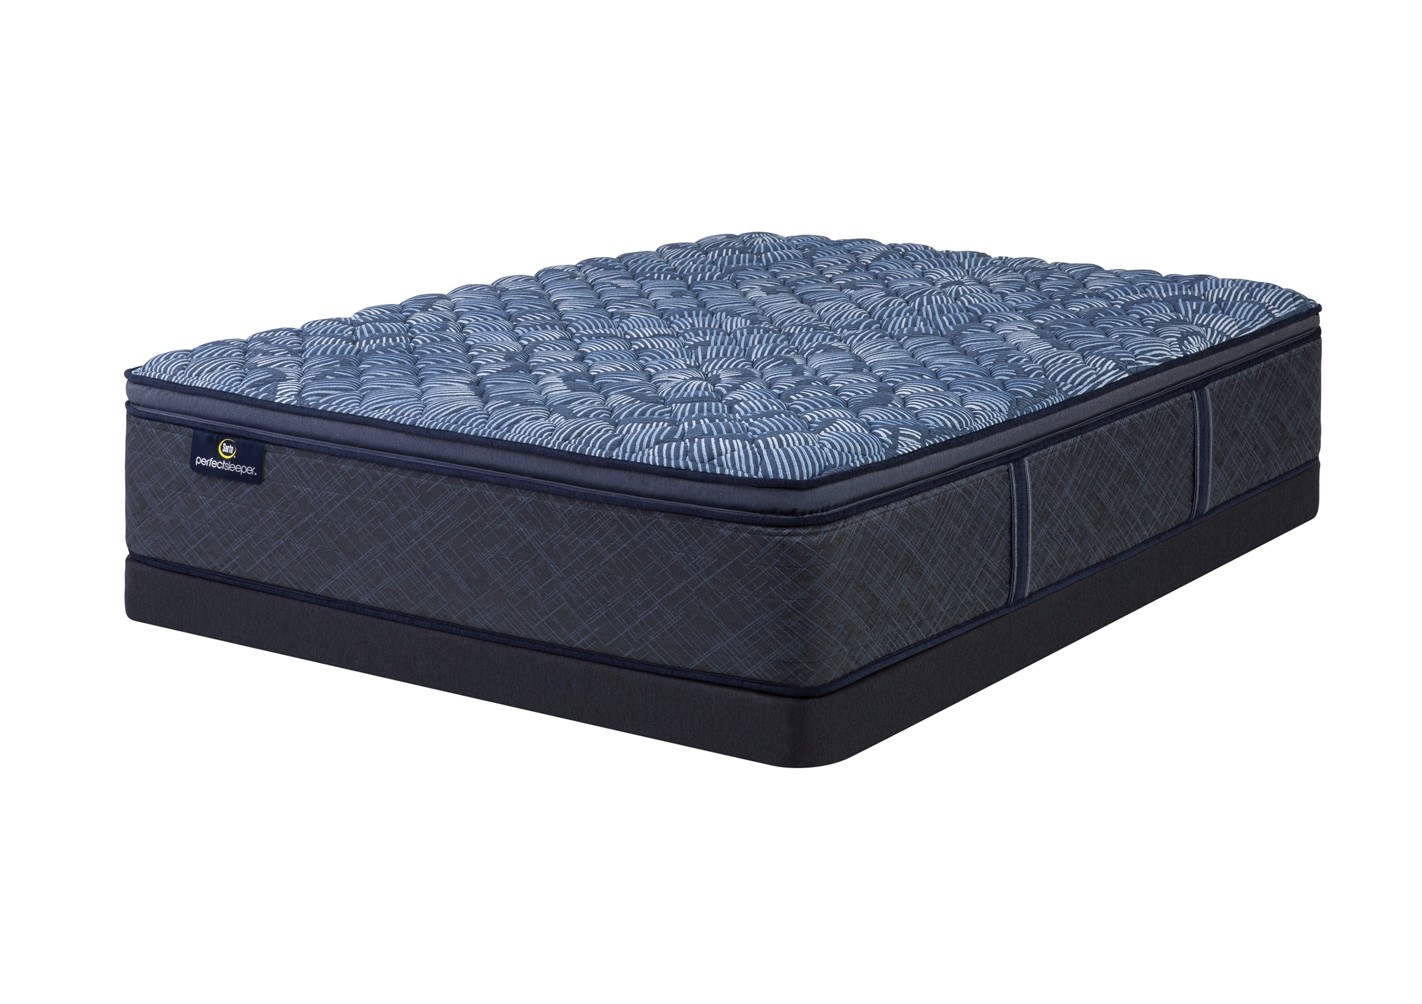 Photo of Serta Perfect Sleeper Cobalt Calm Firm Pillowtop mattress.